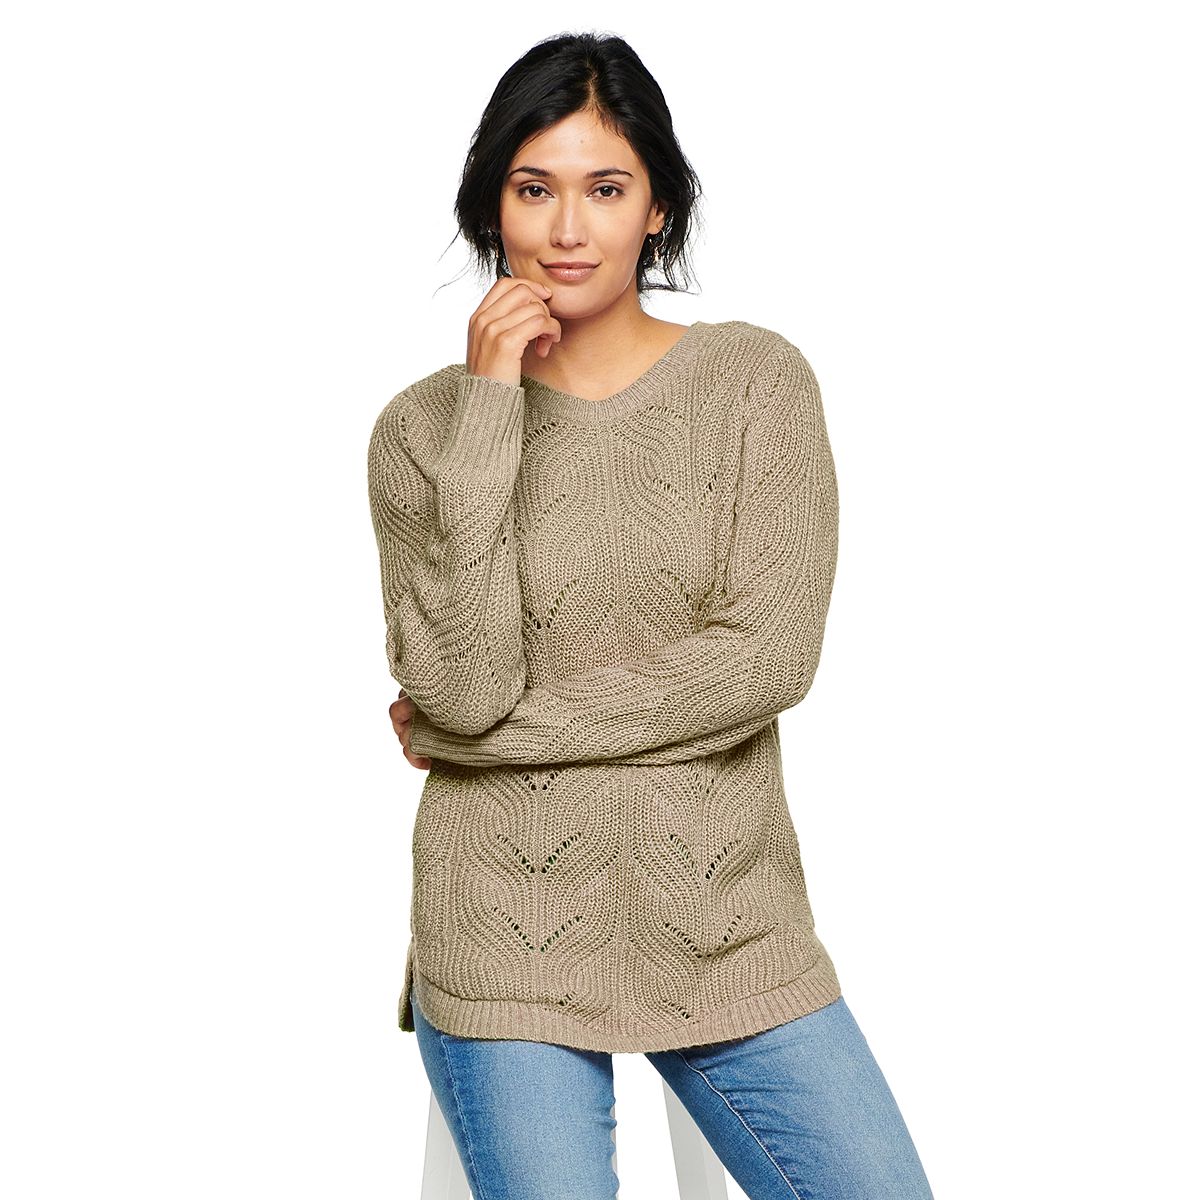 HOT Louis Vuitton Luxury Stitch Sweatshirt For Women